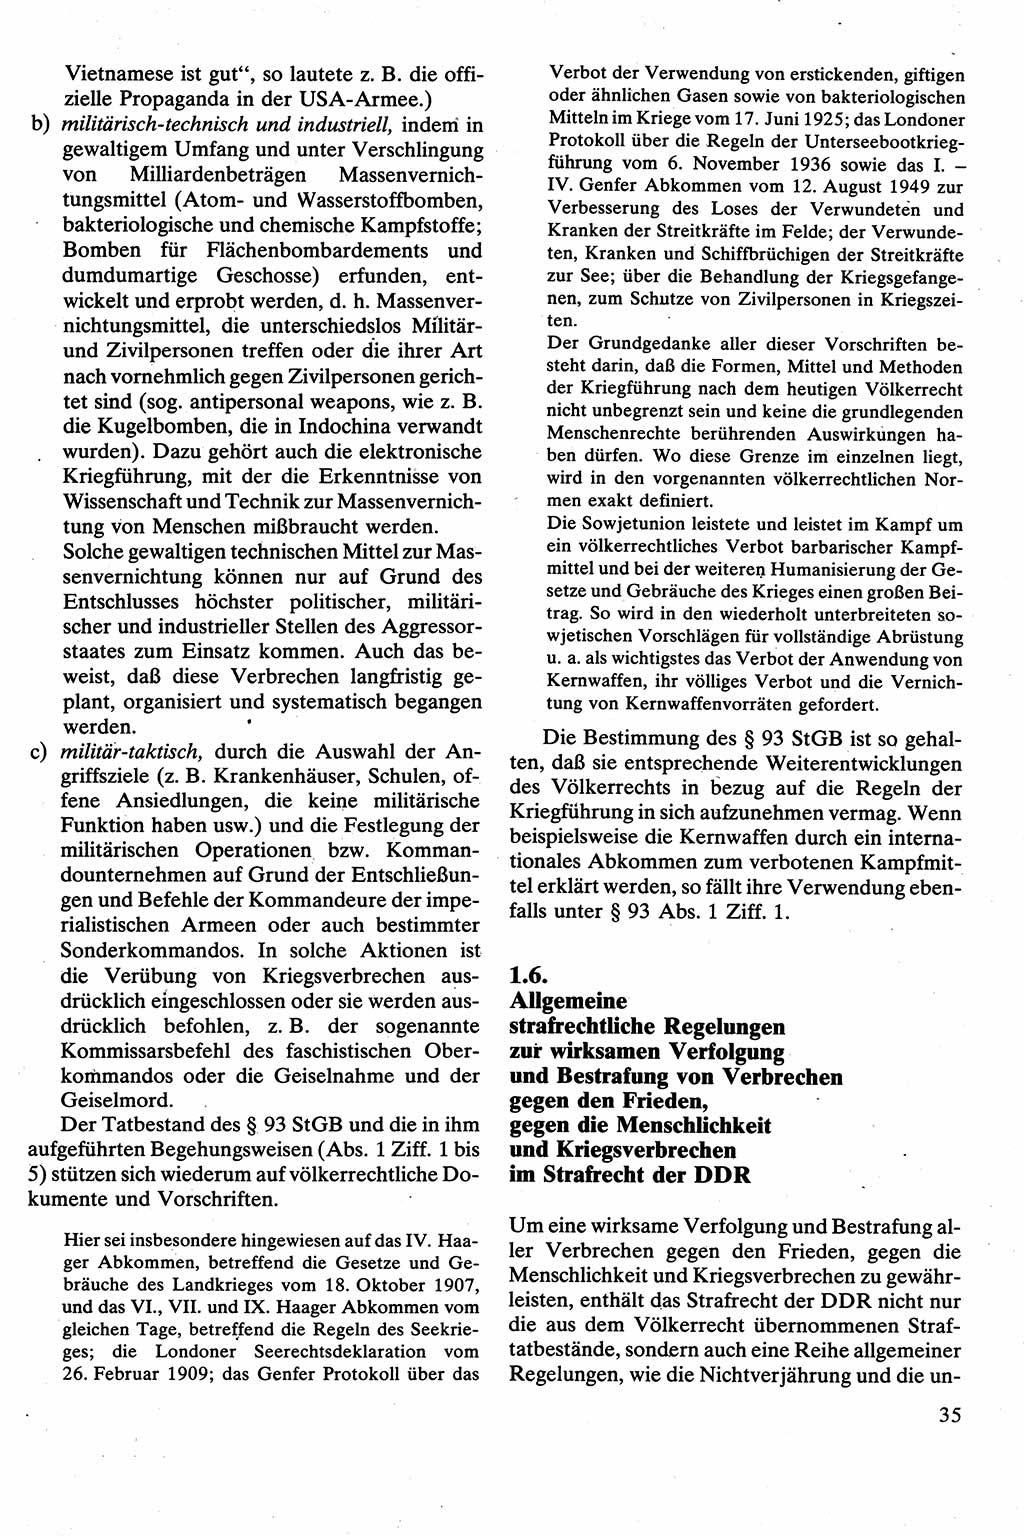 Strafrecht [Deutsche Demokratische Republik (DDR)], Besonderer Teil, Lehrbuch 1981, Seite 35 (Strafr. DDR BT Lb. 1981, S. 35)